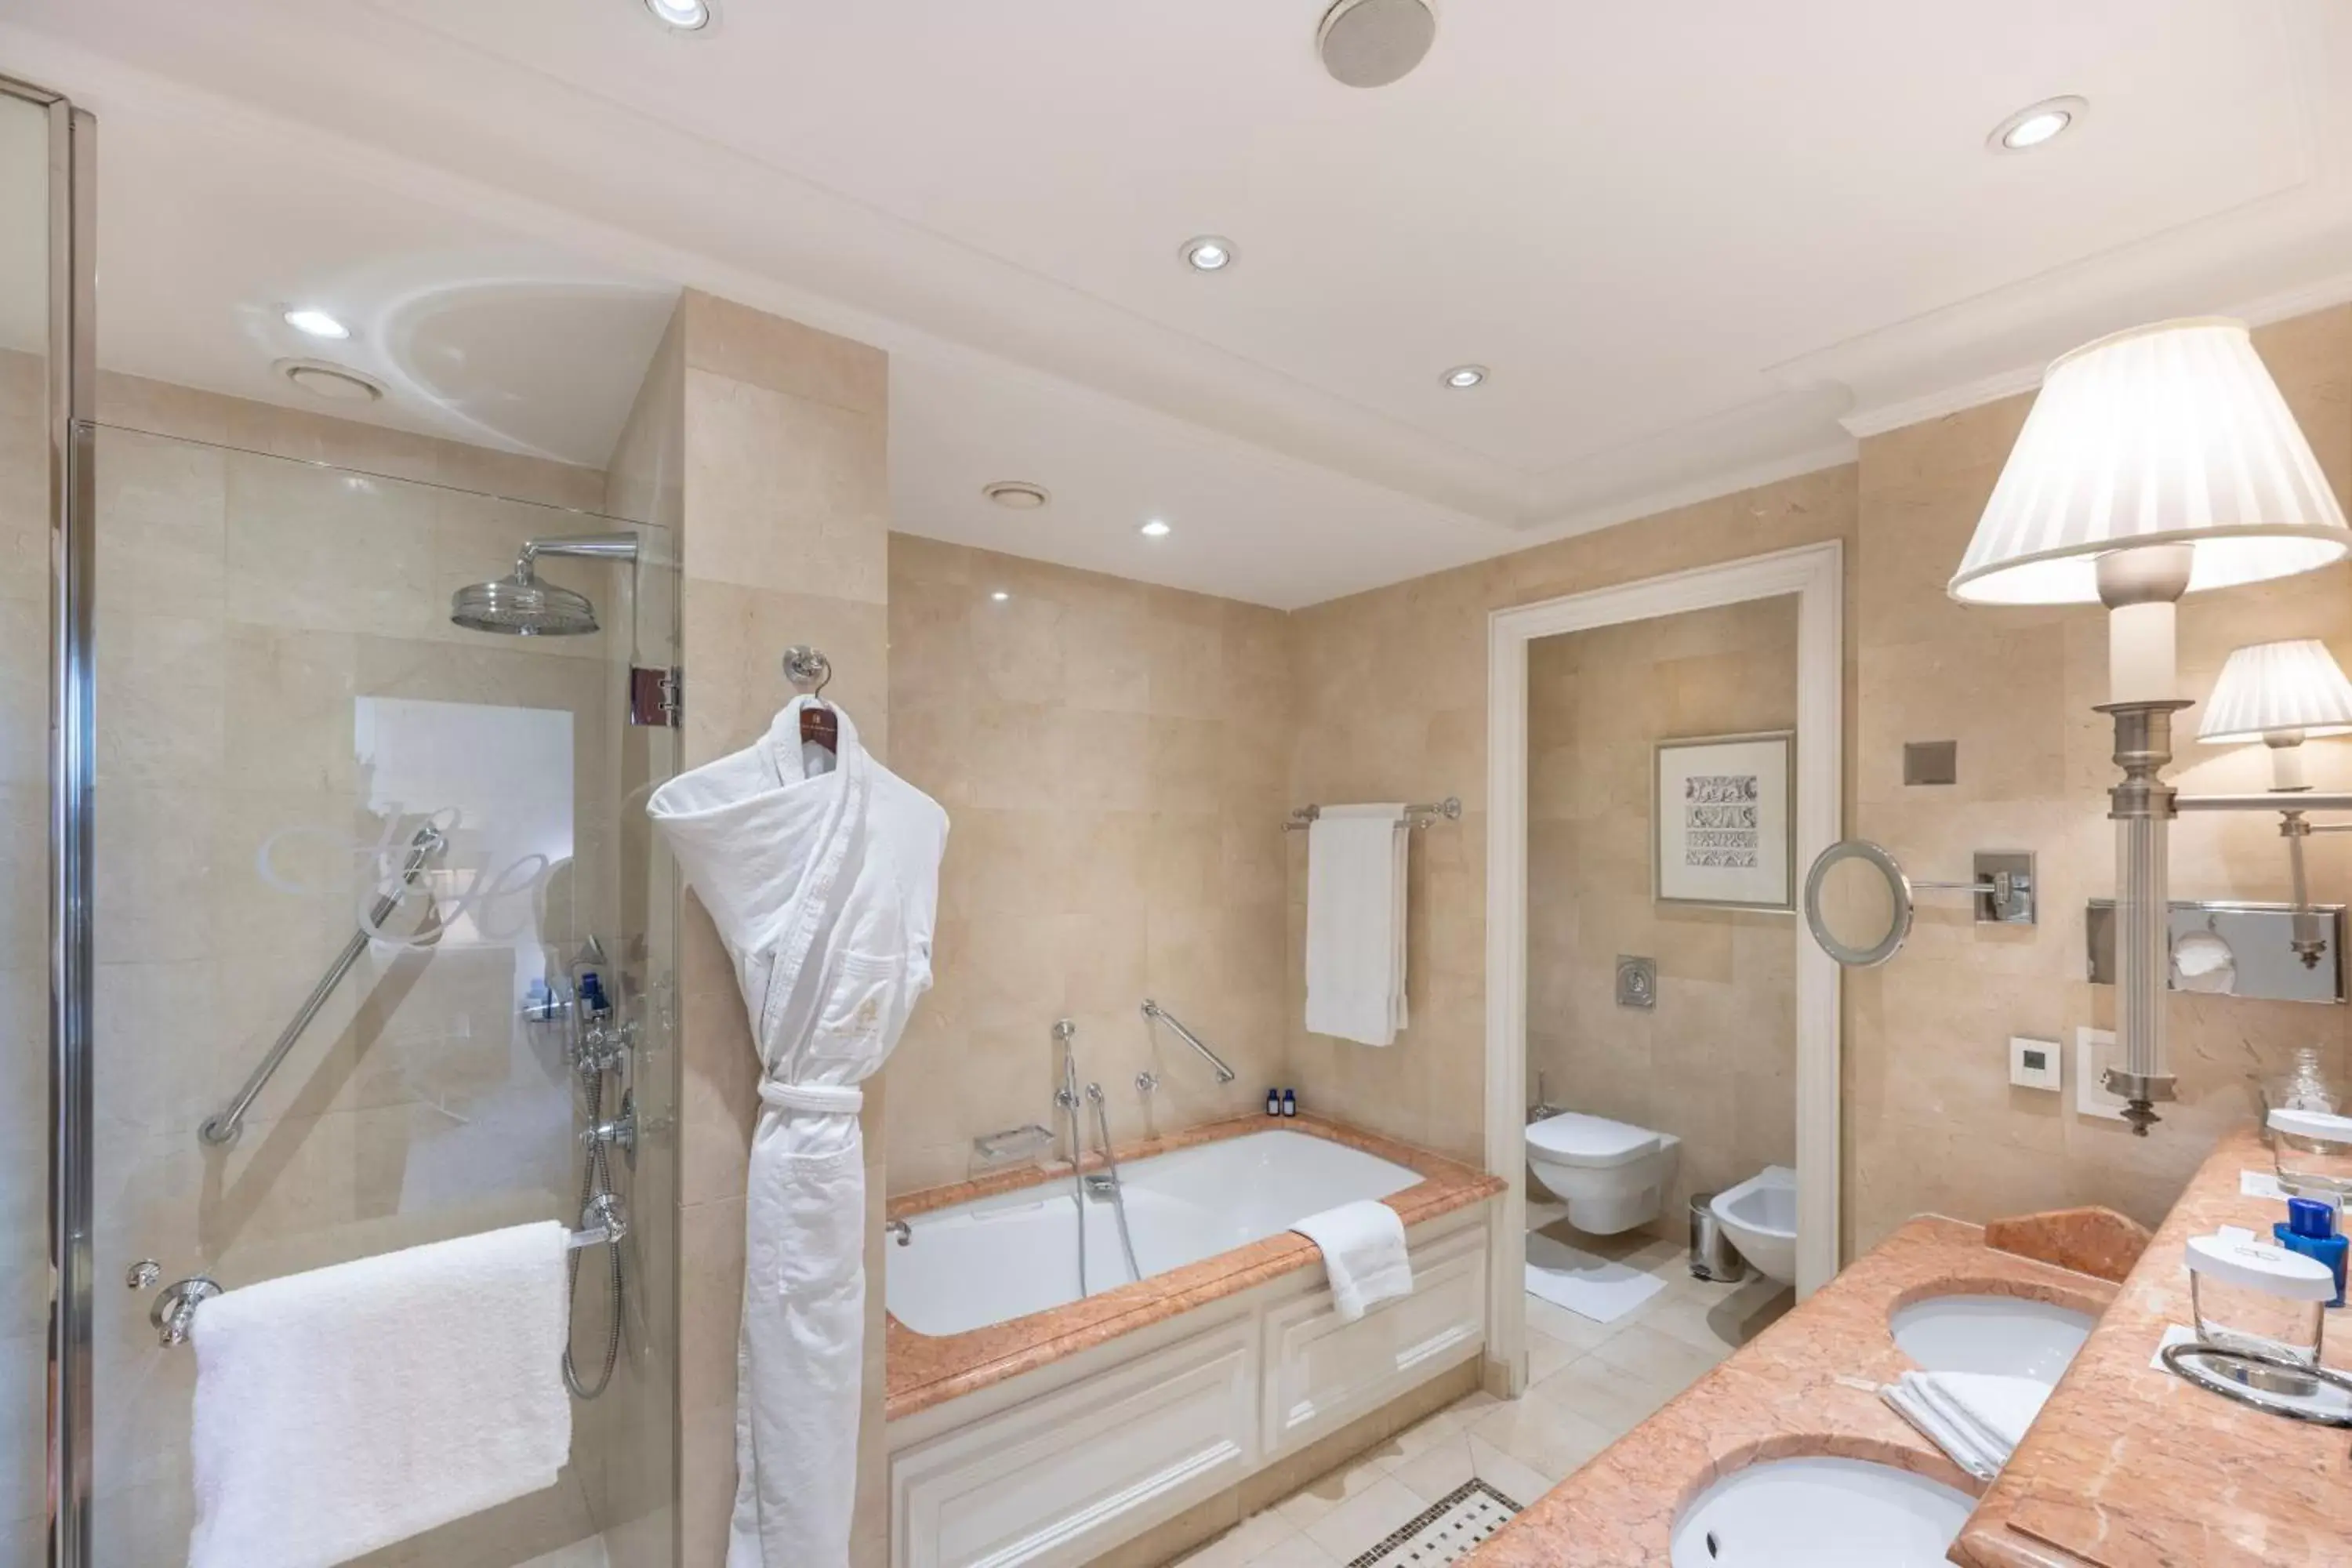 Bathroom in Hôtel Hermitage Monte-Carlo